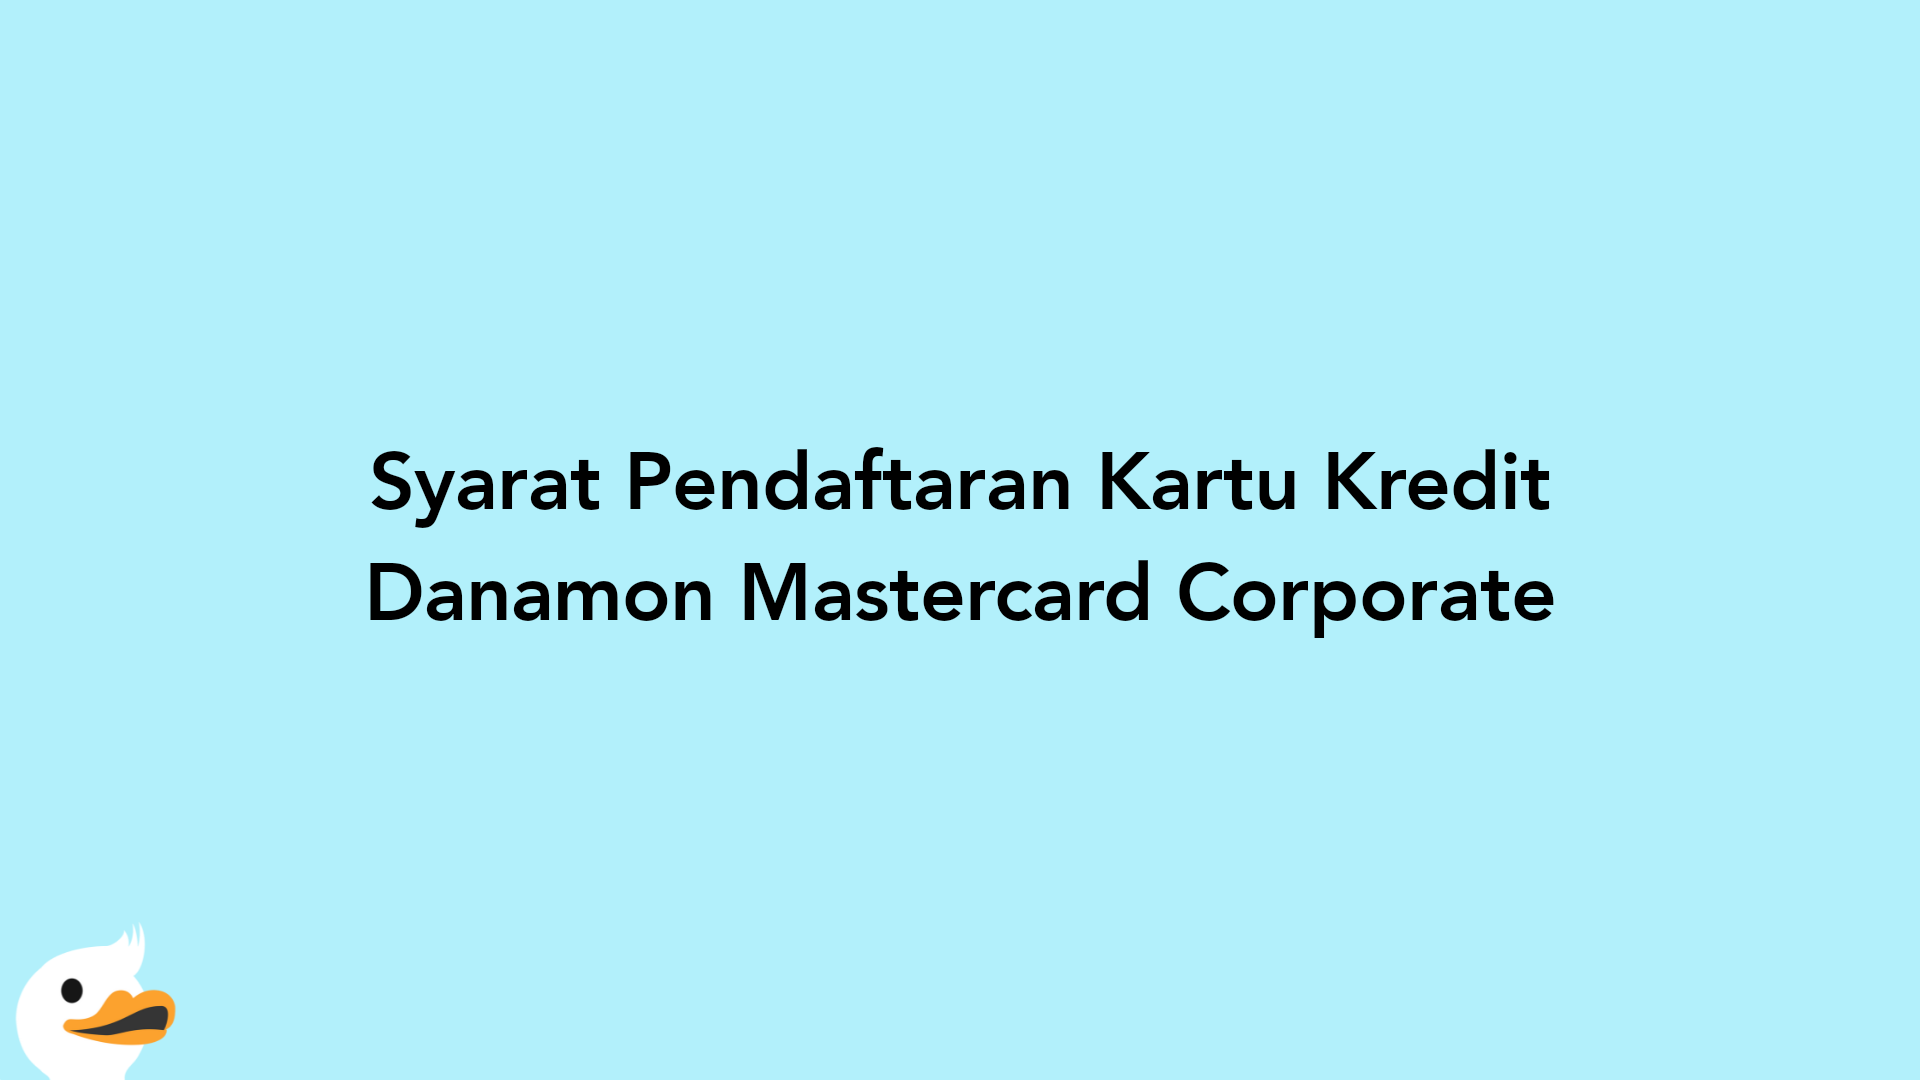 Syarat Pendaftaran Kartu Kredit Danamon Mastercard Corporate